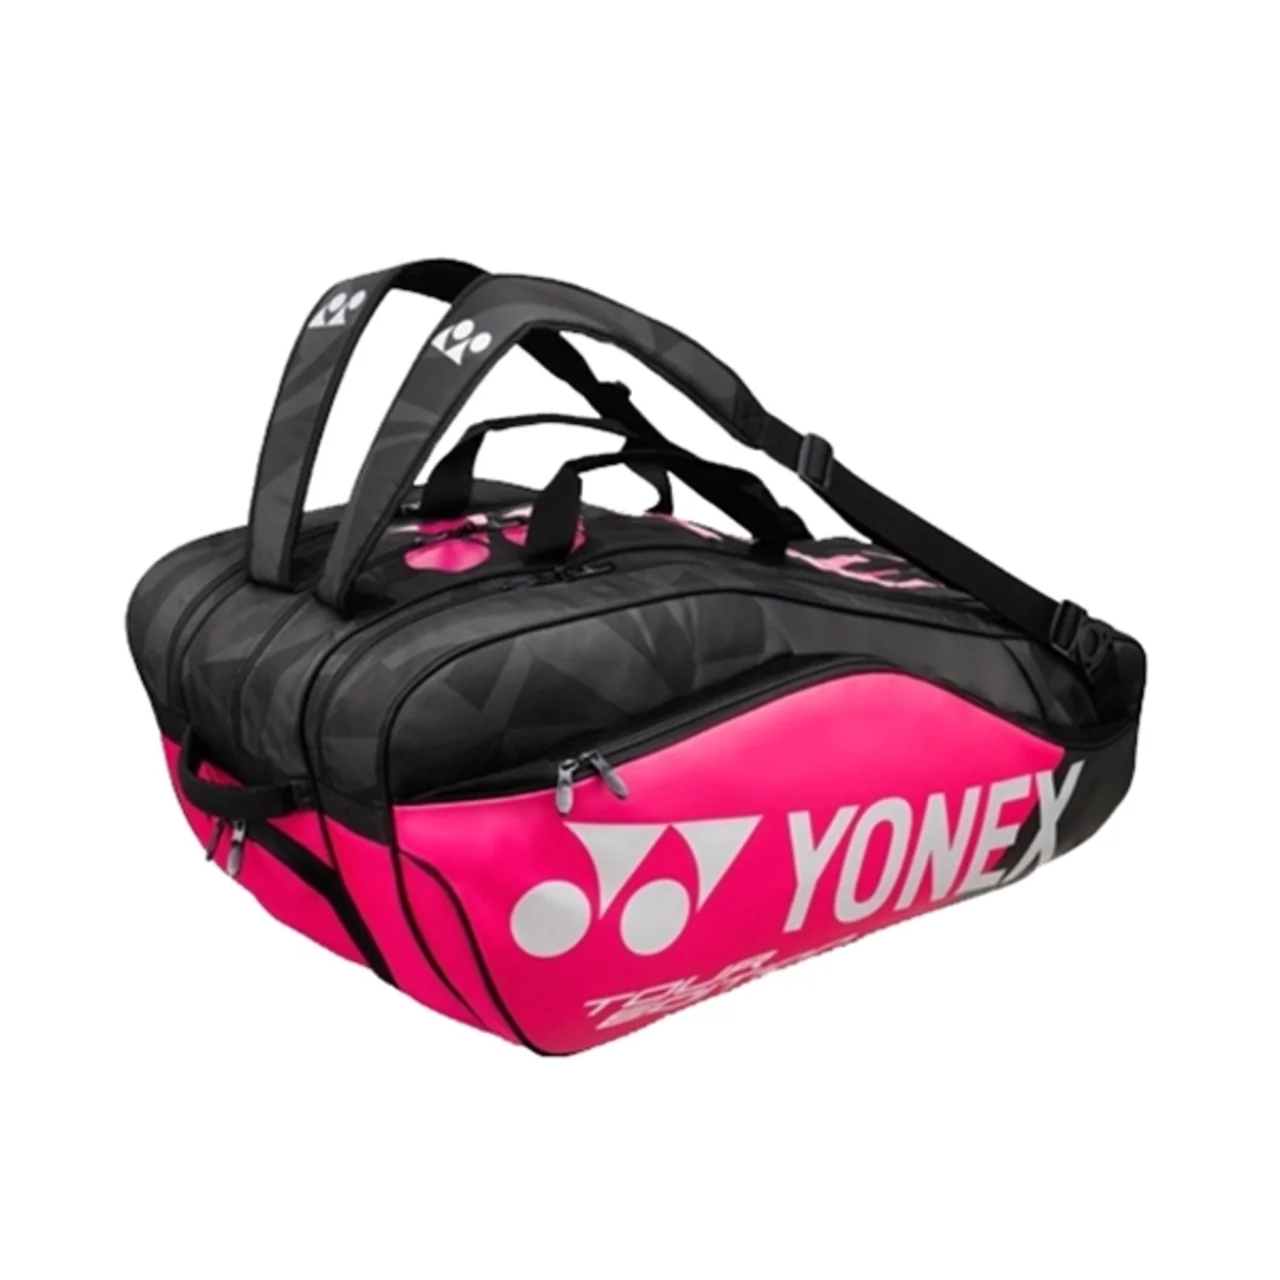 Yonex Pro Bag x9 Black/Pink 2018